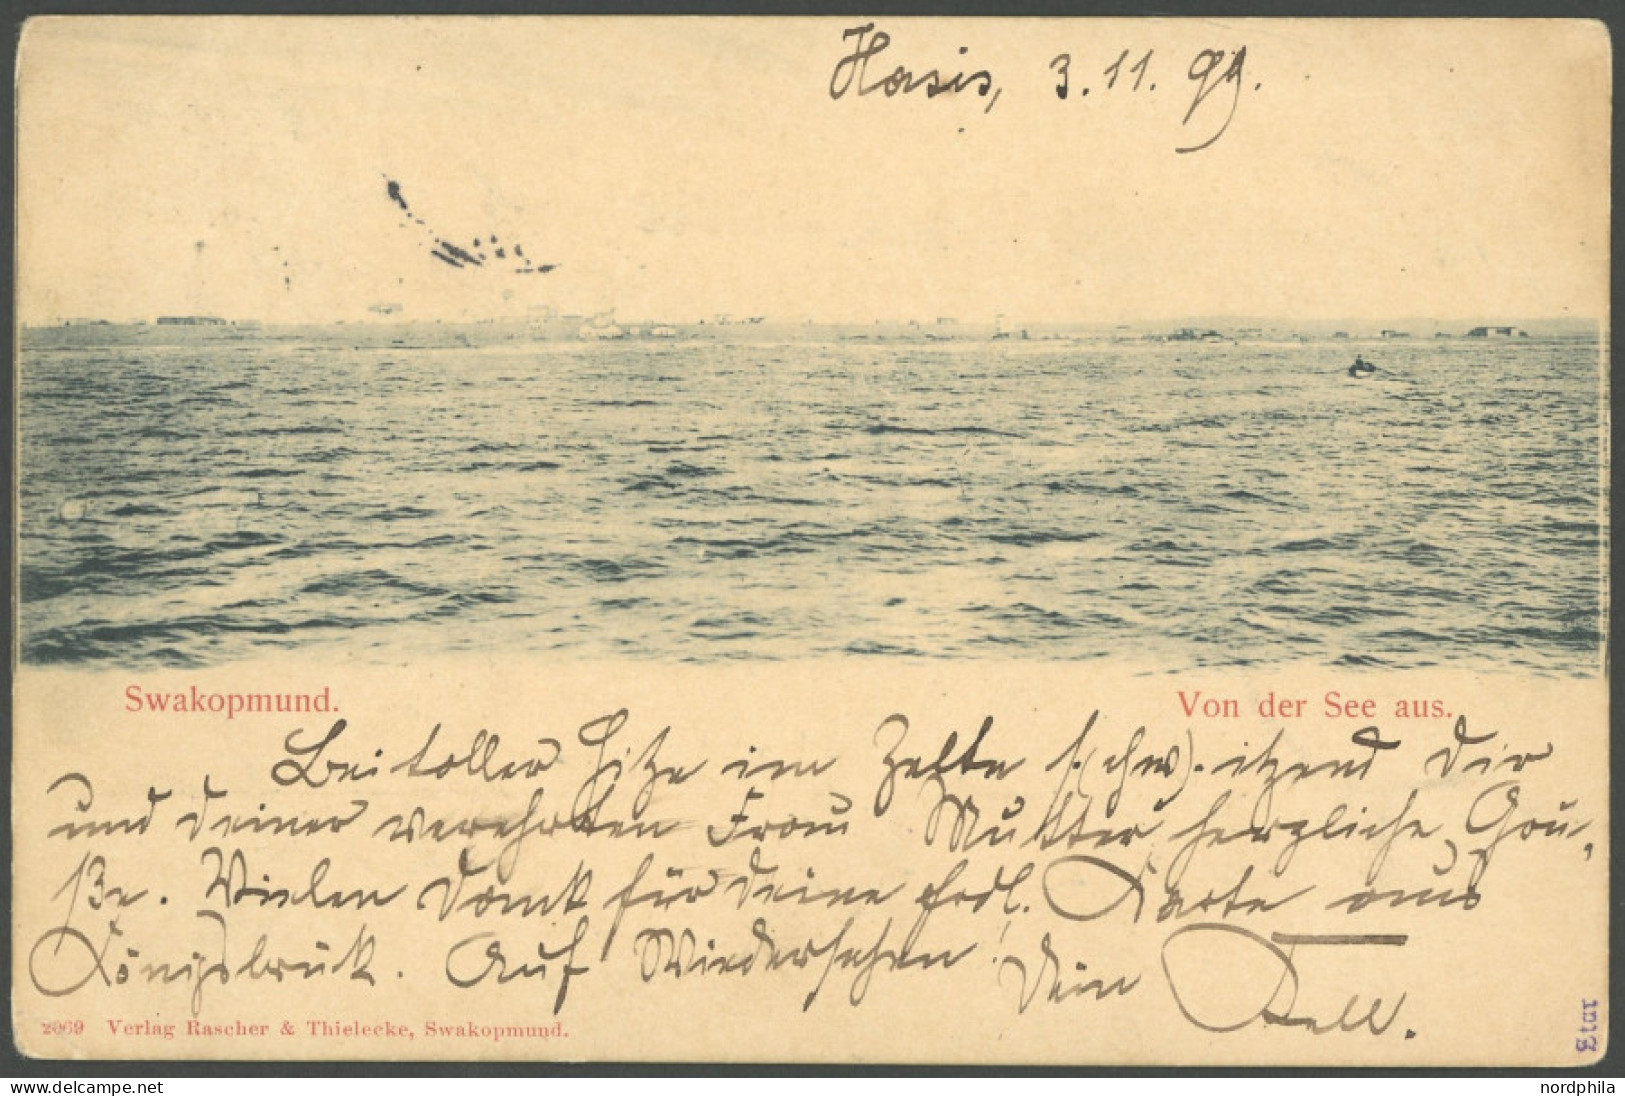 DSWA 6 BRIEF, Jakalswater In Schwarz, 23.11.1899, Wanderstempel I Auf Ansichtskarte Aus HASIS Mit 5 Pf. Nach Berlin, Pra - German South West Africa